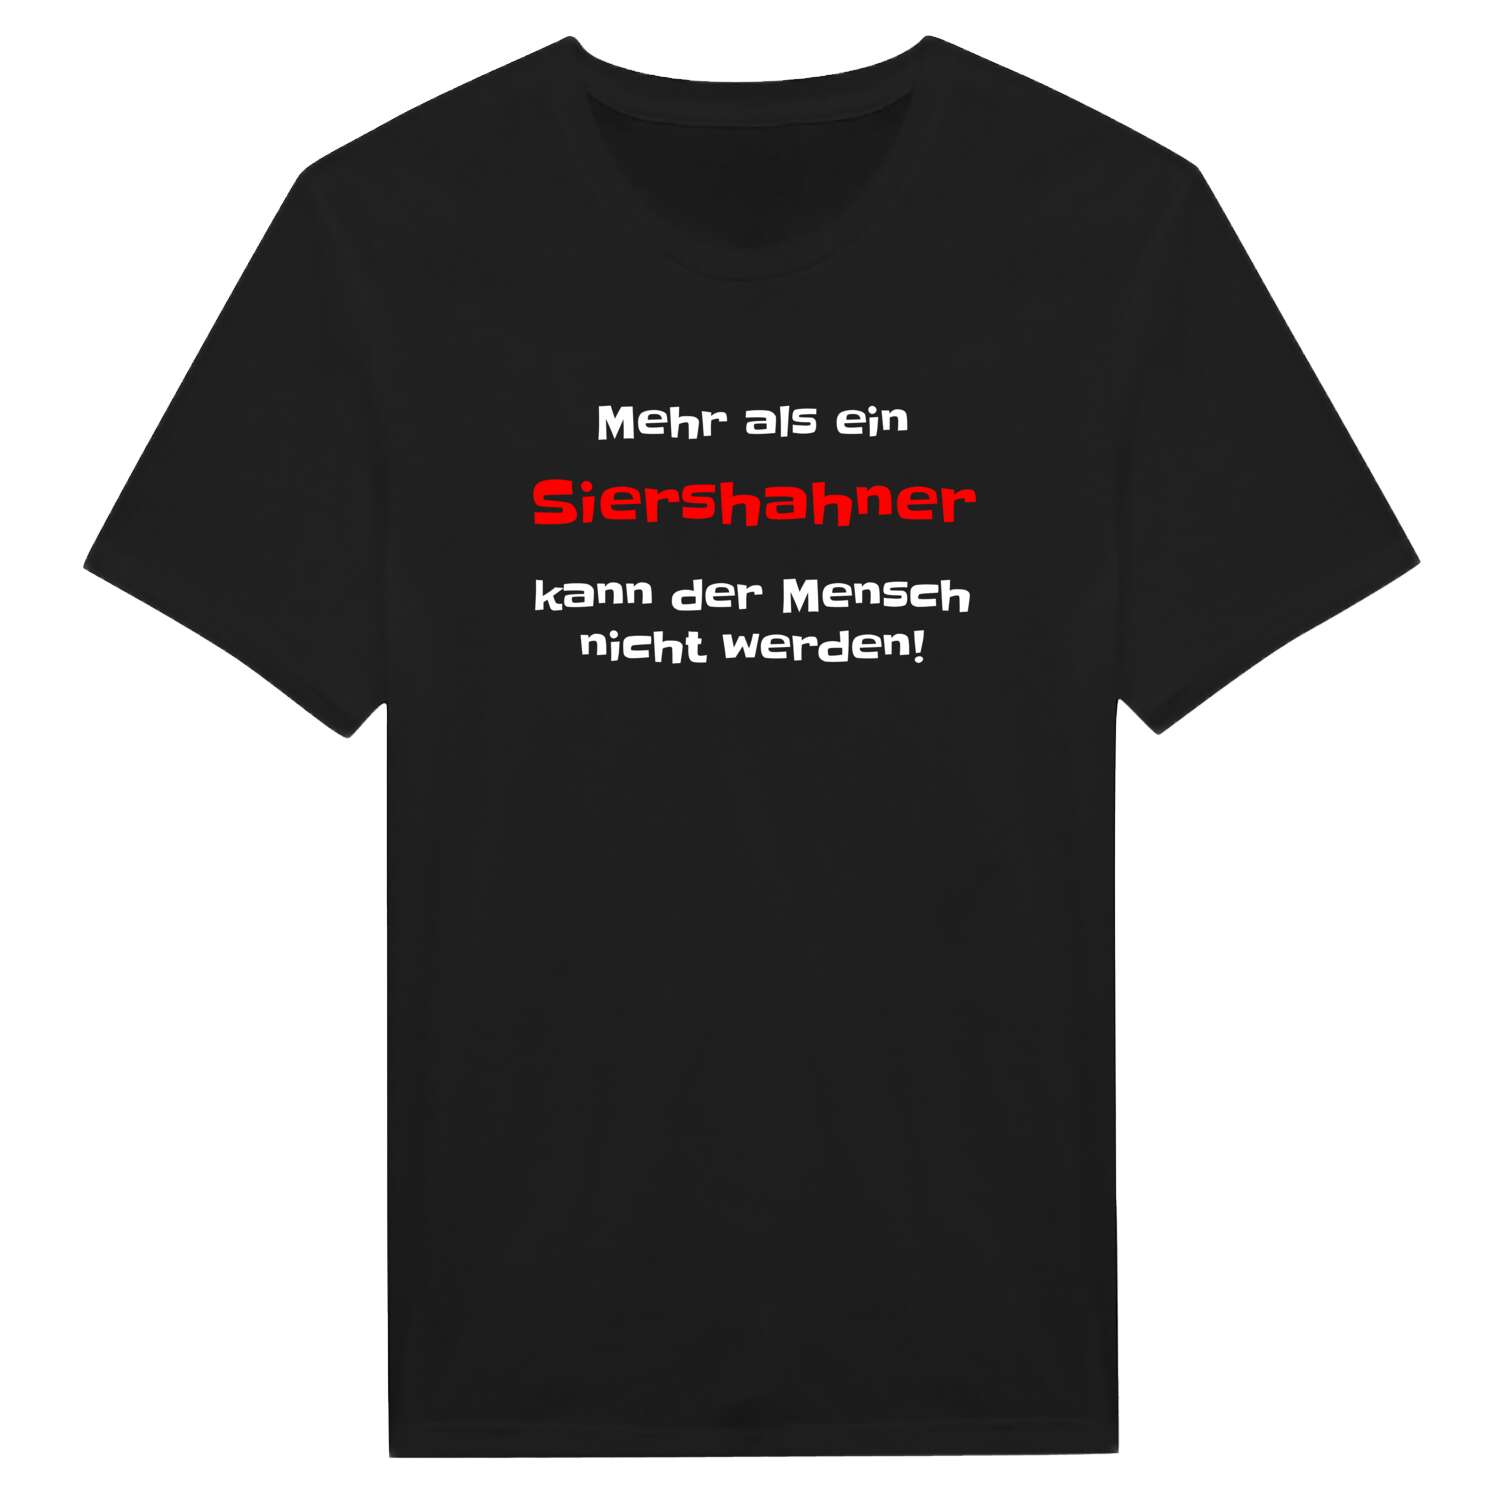 Siershahn T-Shirt »Mehr als ein«